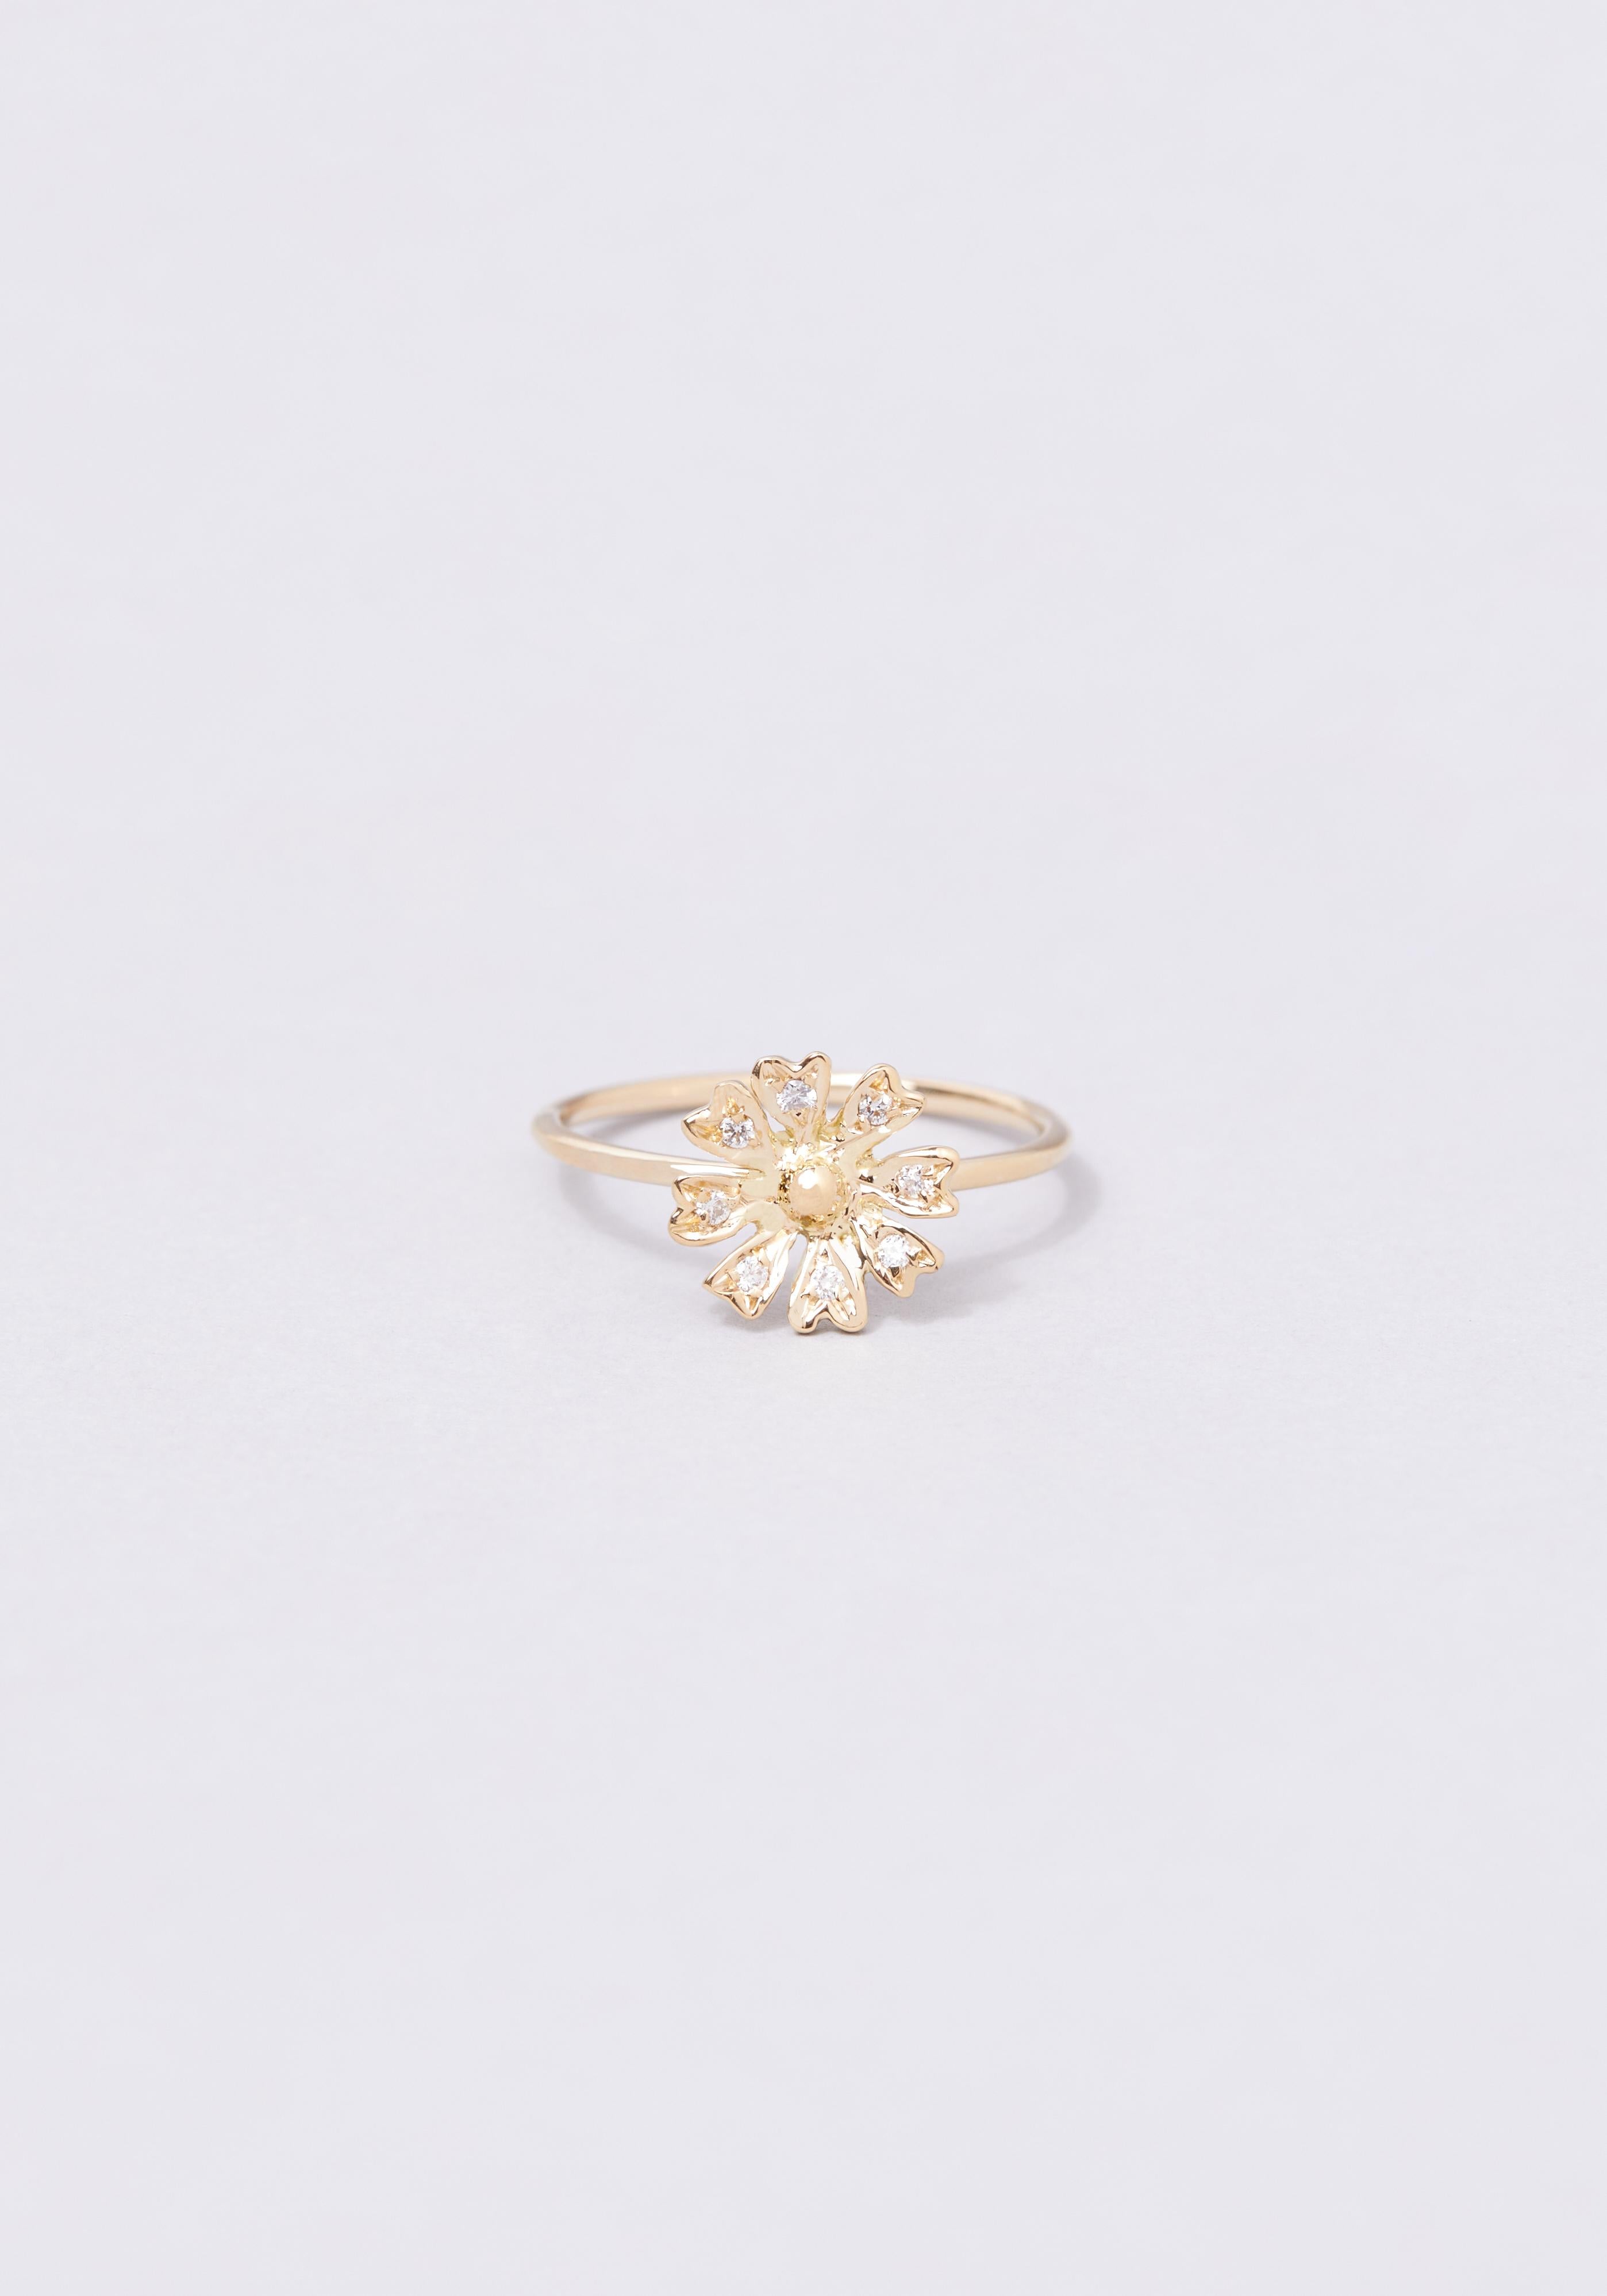 Der Ring Louiza erblüht zu einer atemberaubenden Blume, die auf jedem Blütenblatt mit weißen oder schwarzen Diamanten besetzt ist. Sagten Sie prächtig? Der Ring Louiza wird in Paris handgefertigt und ist in 18 Karat Gelbgold erhältlich.

Die